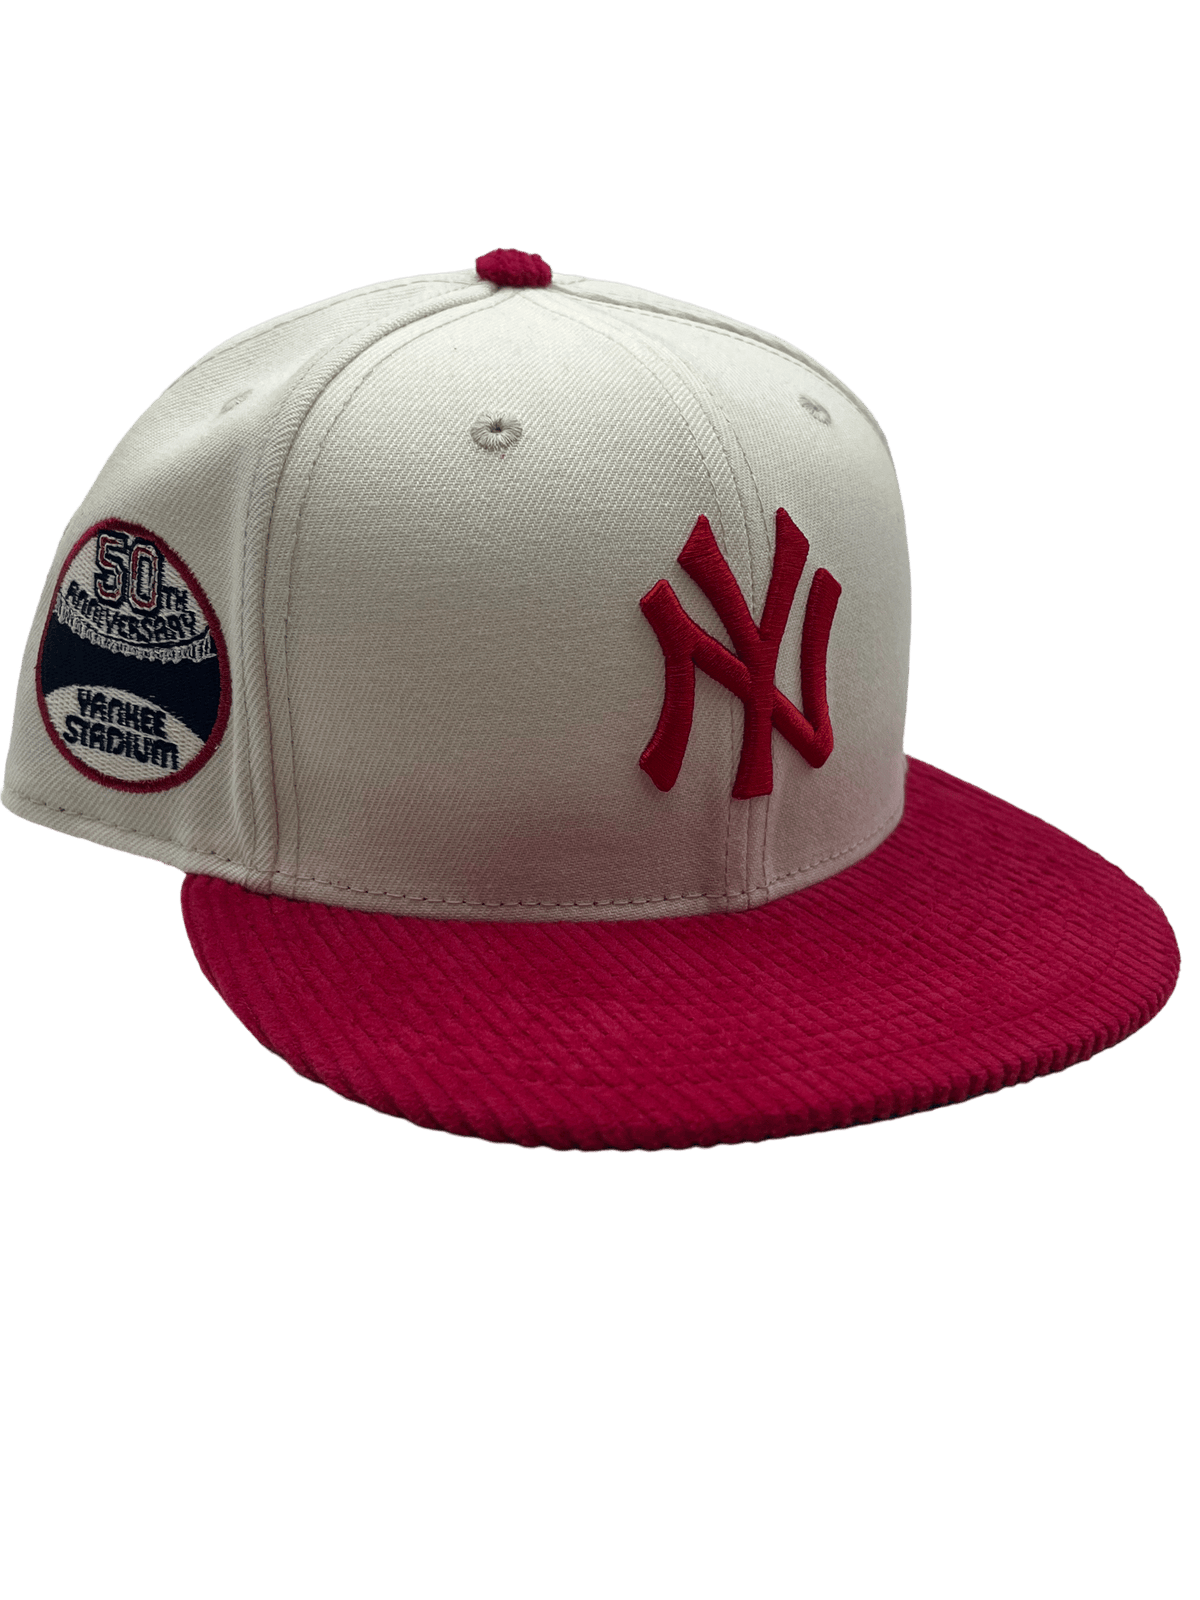 Custom New Era Cap New York Yankees Baseball Cap